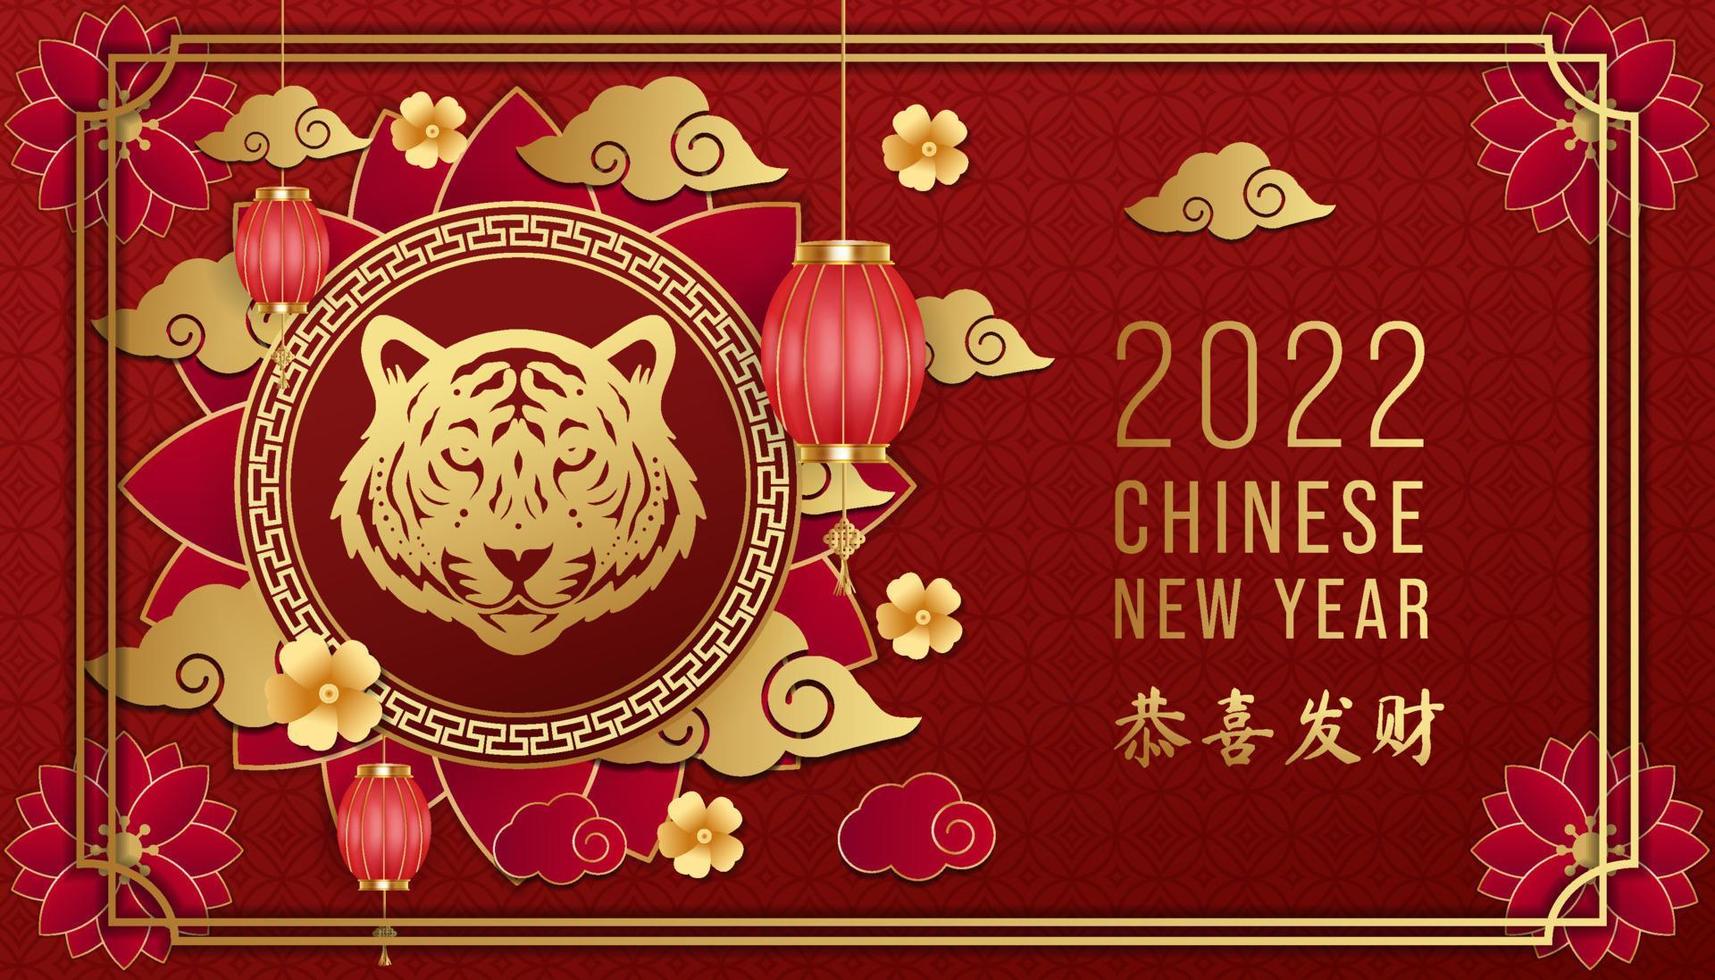 nouvel an chinois doré 2022 sur fond rouge avec tiger shio ou zodiaque chinois et nuage d'ornement, fleur, lanterne. vecteur de conception